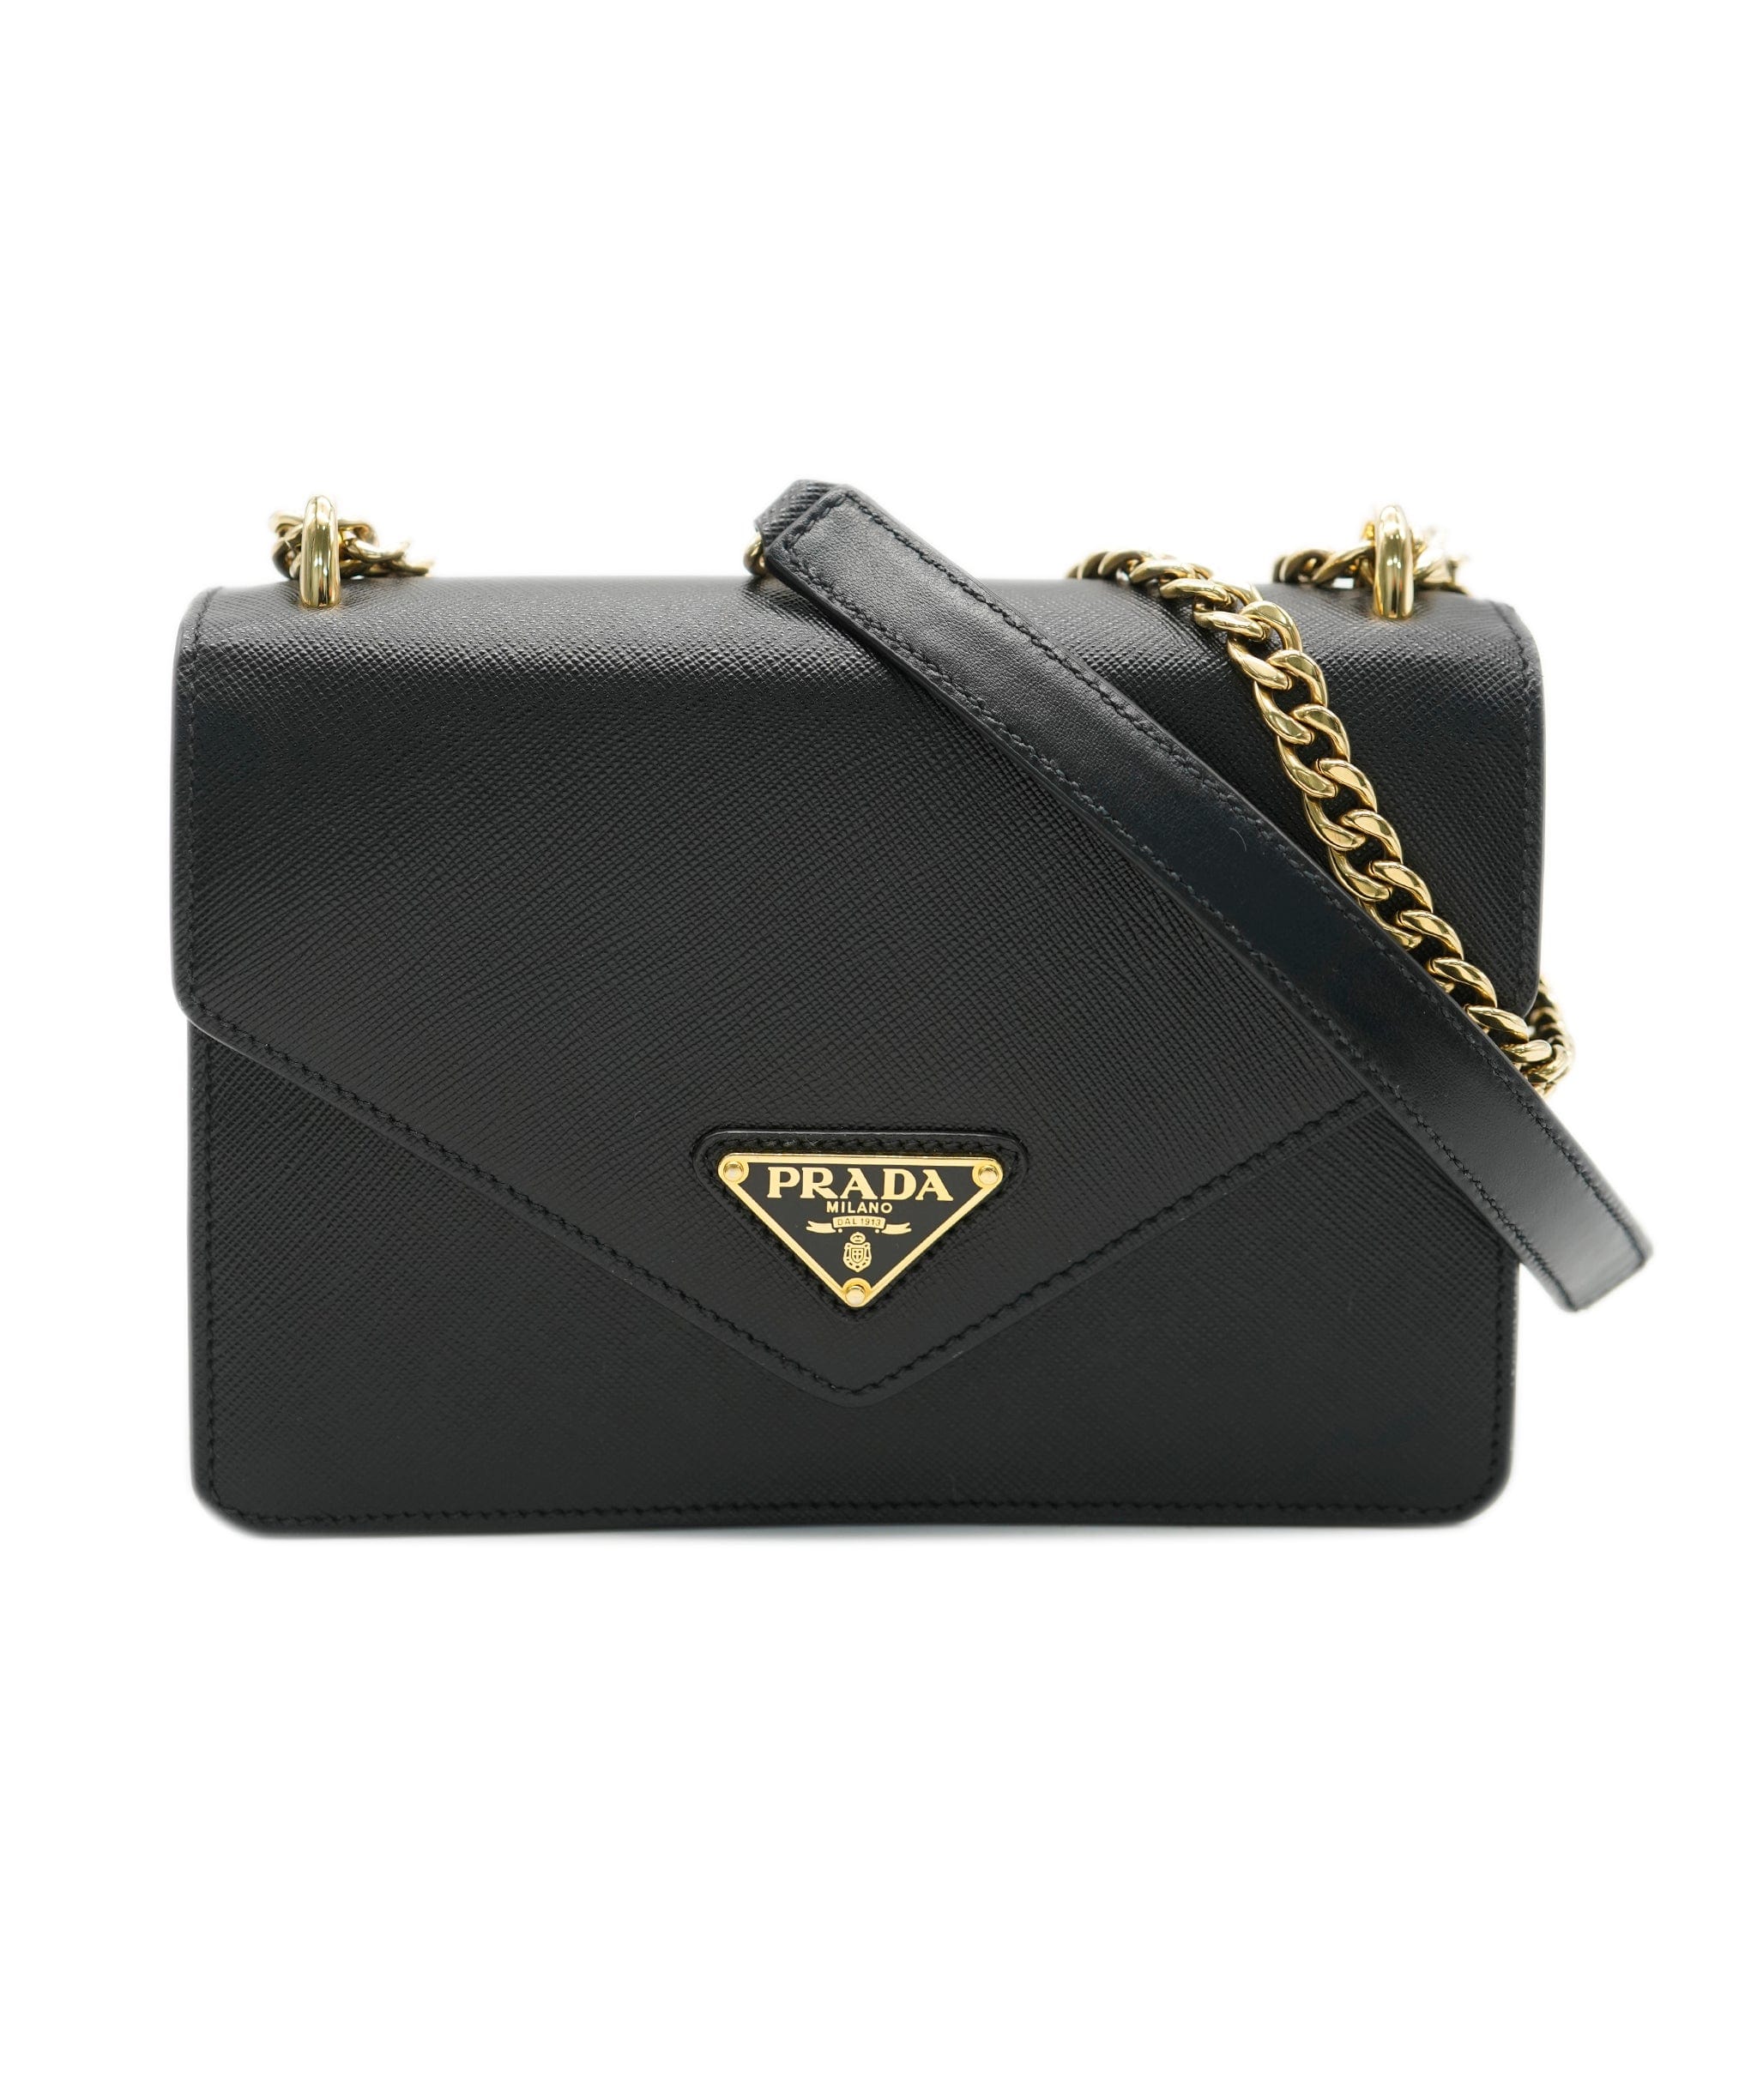 Prada Prada black saffiano envelope bag with GHW - AJC0651